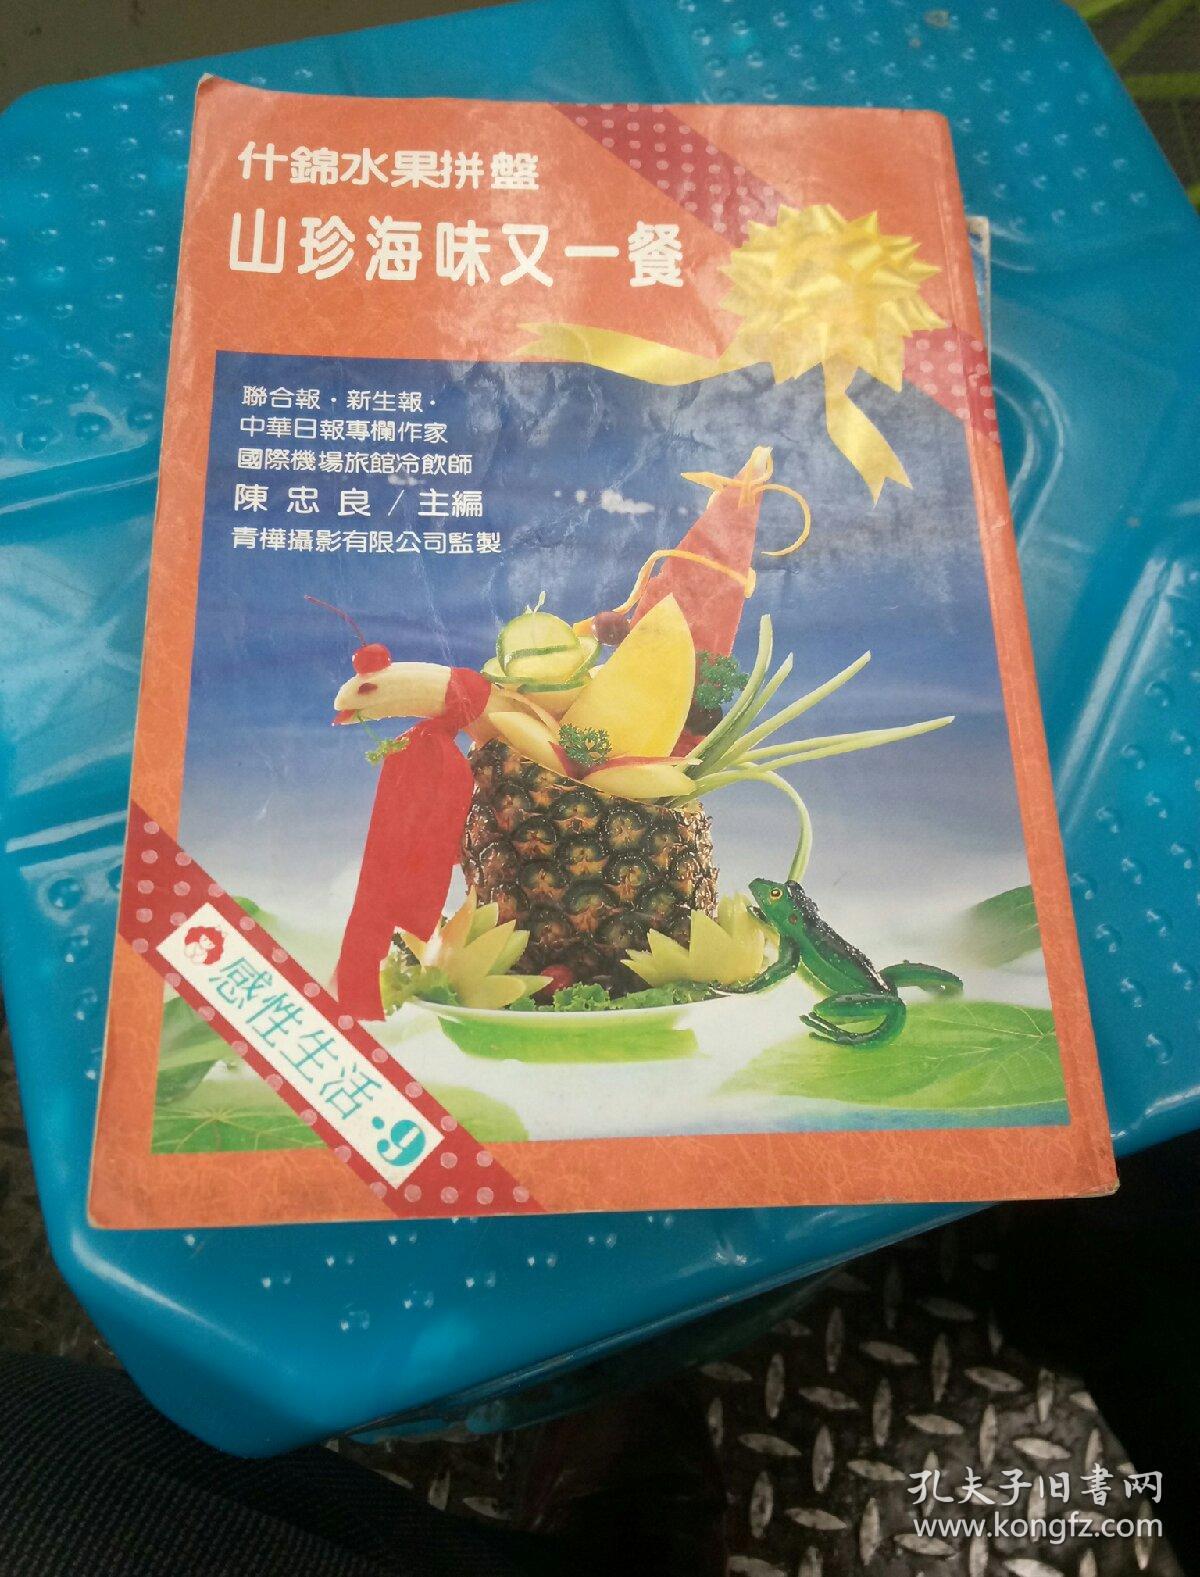 山珍海味又一餐/什锦水果拼盘